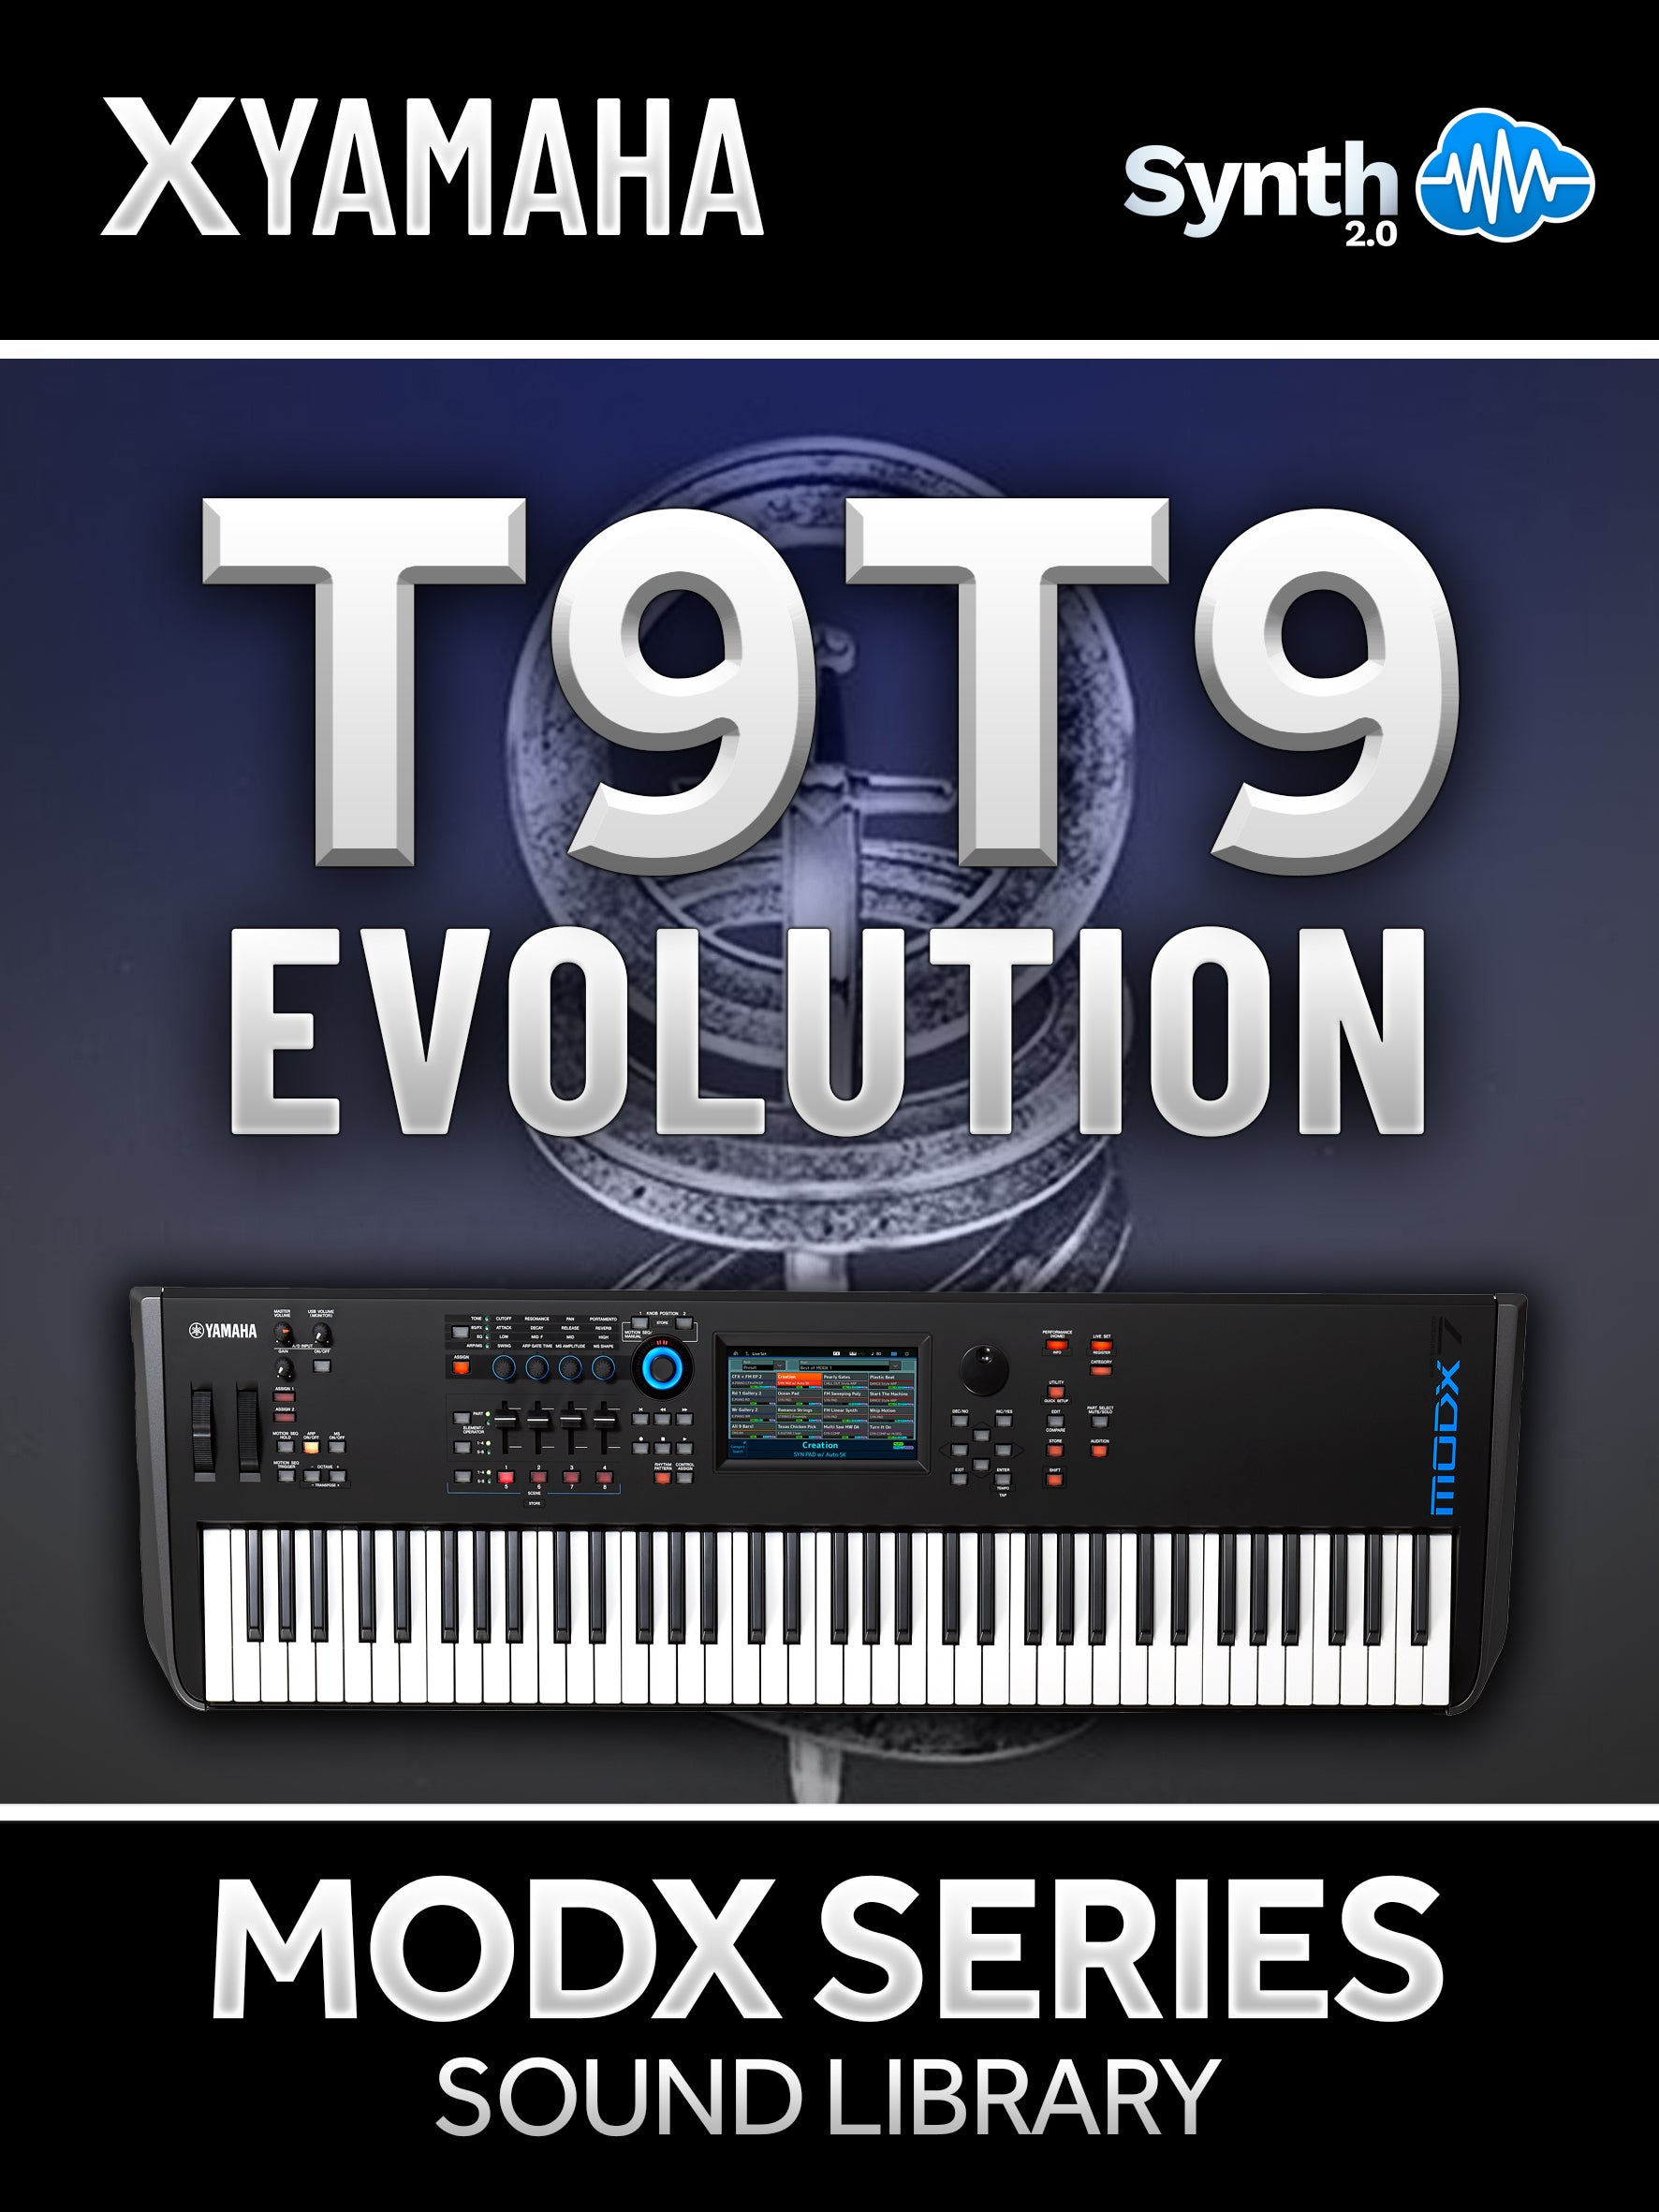 LDX202 - ( Bundle ) - T9T9 Evolution + T9T9 Cover Pack - Yamaha MODX / MODX+